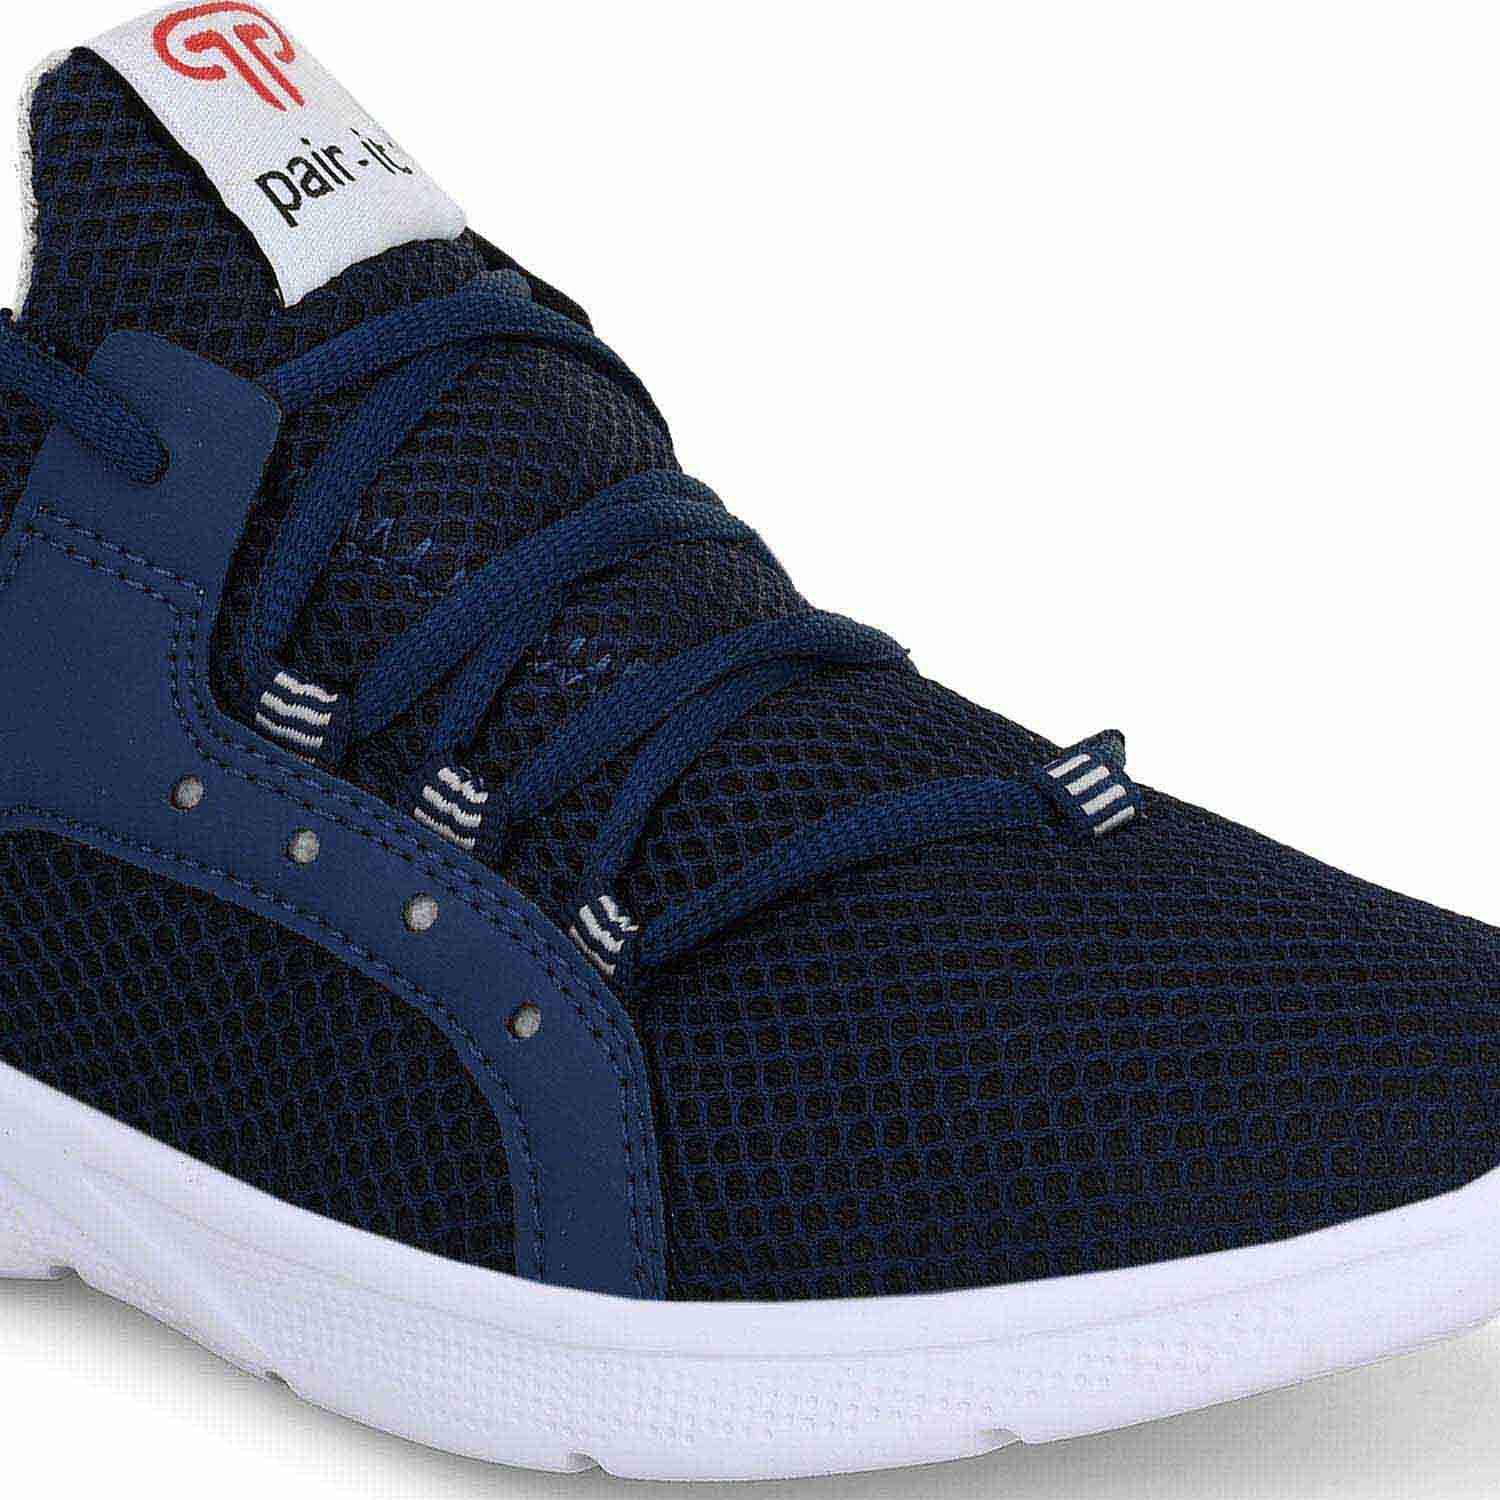 Pair-it Men's Sports Shoes-LZ-Presto-115-Blue